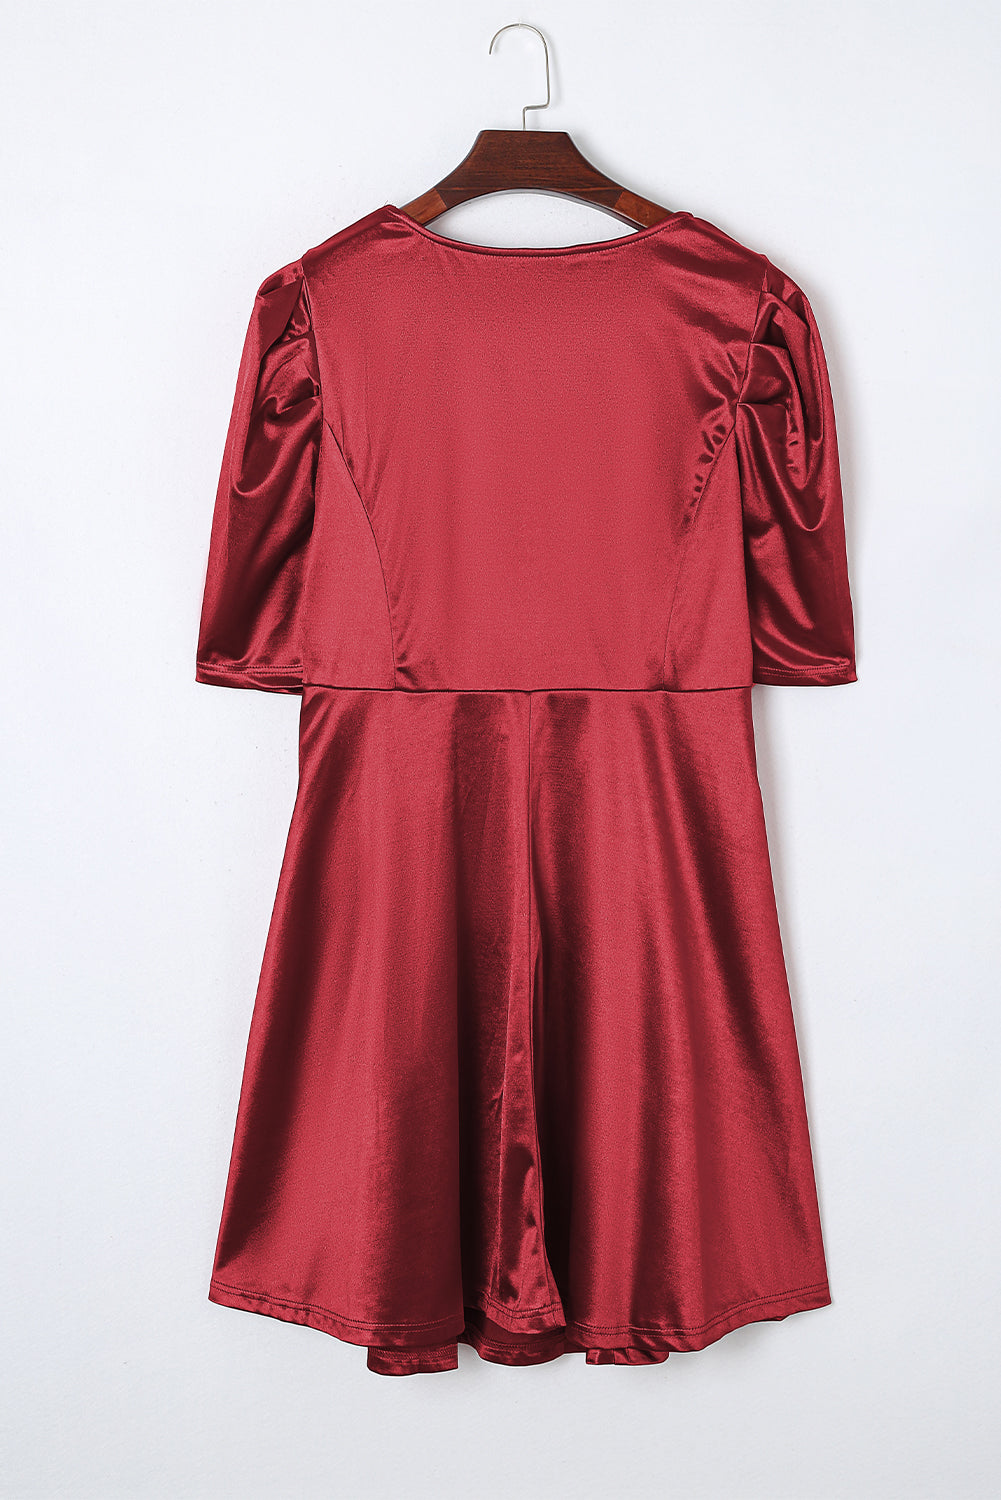 Ognjeno rdeča midi obleka velike velikosti z naborki in napihnjenimi rokavi